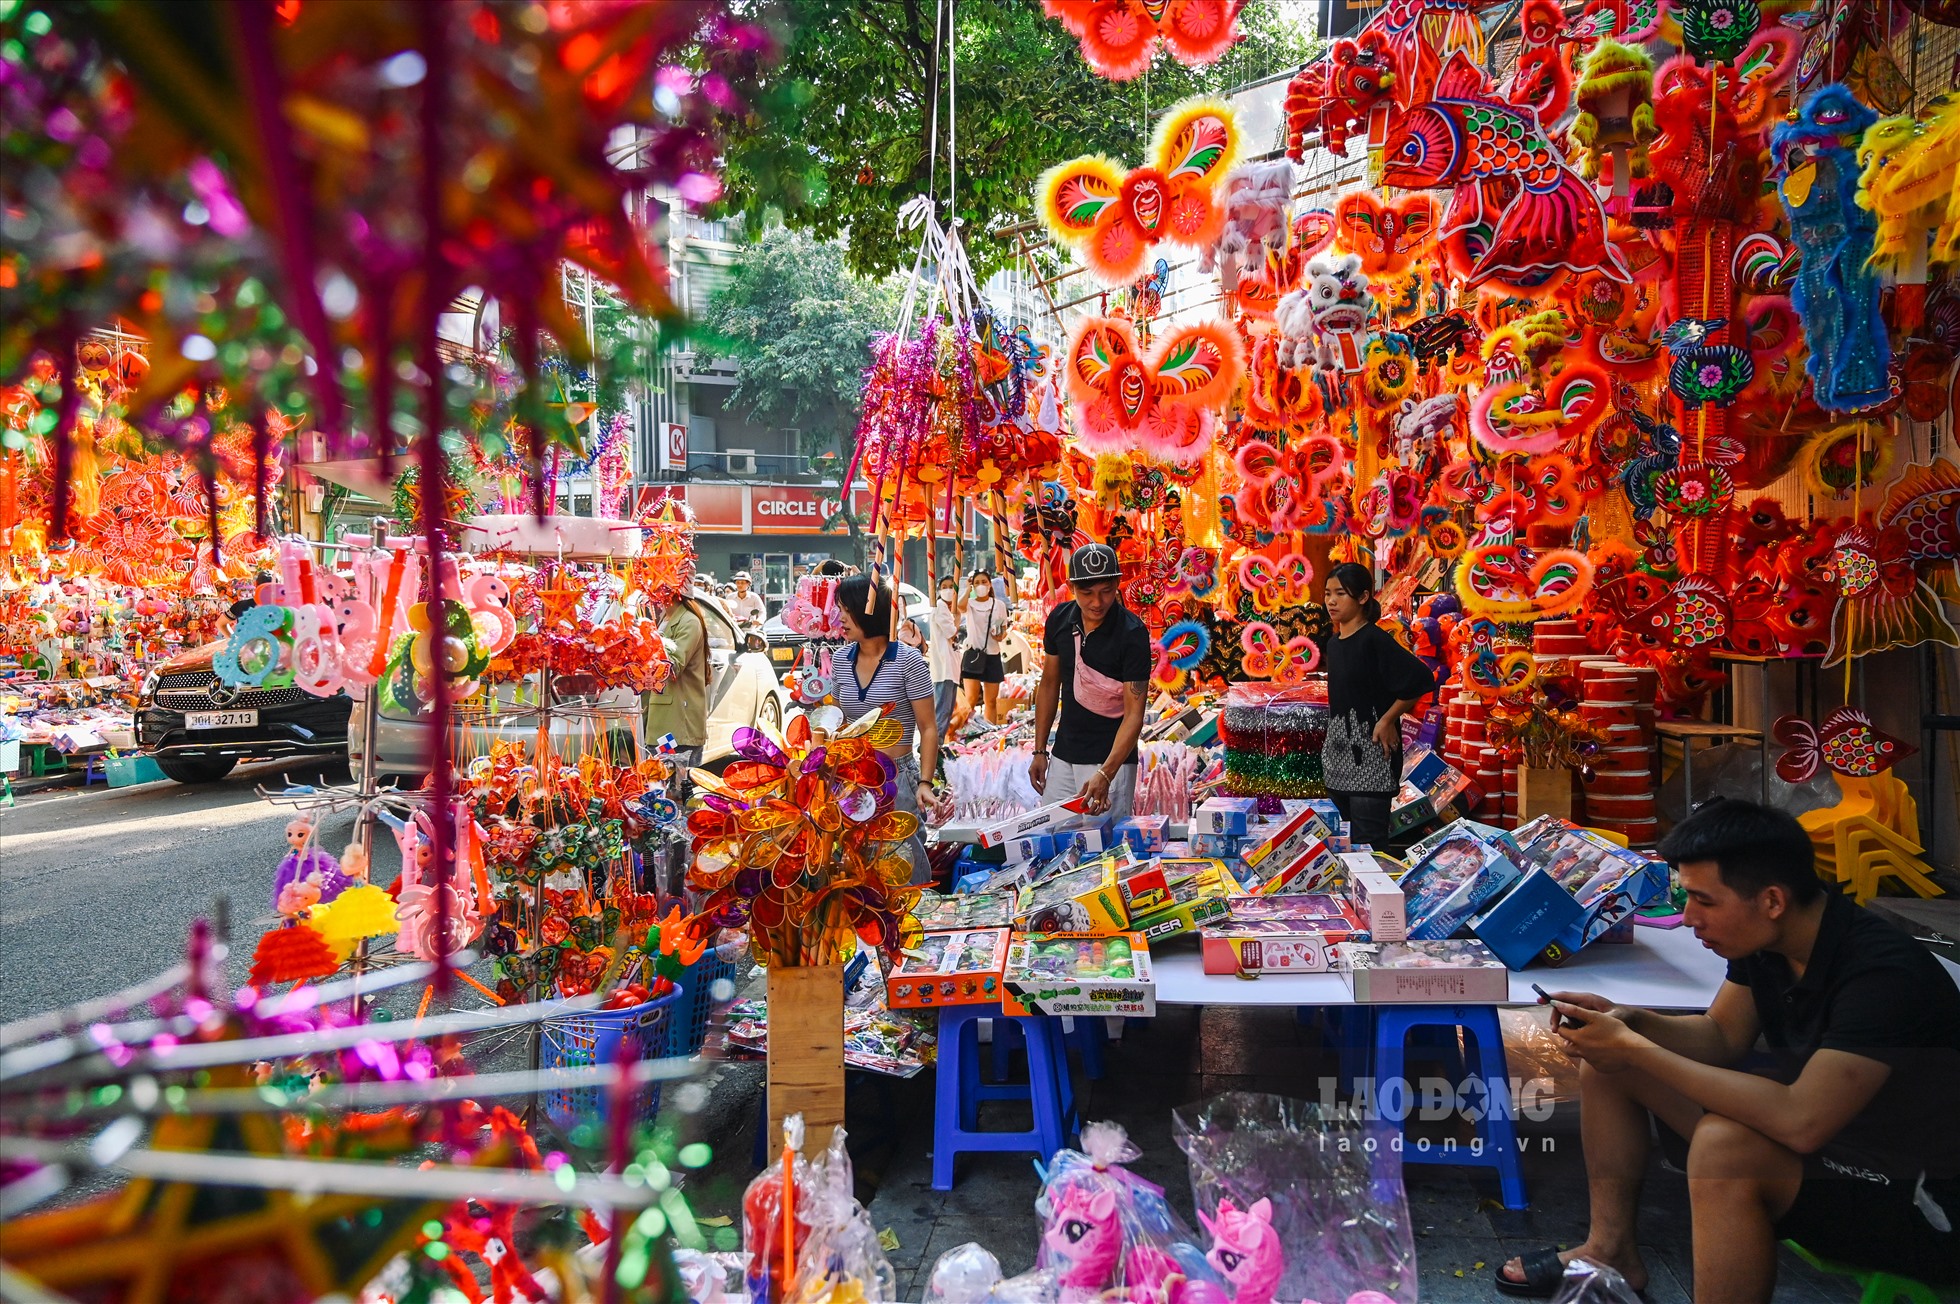 Hàng Mã nổi tiếng với các sản phẩm thủ công truyền thống, những cửa hàng bày bán  đồ chơi trung thu tạo nên vẻ đẹp rực rỡ sắc màu của con phố này.